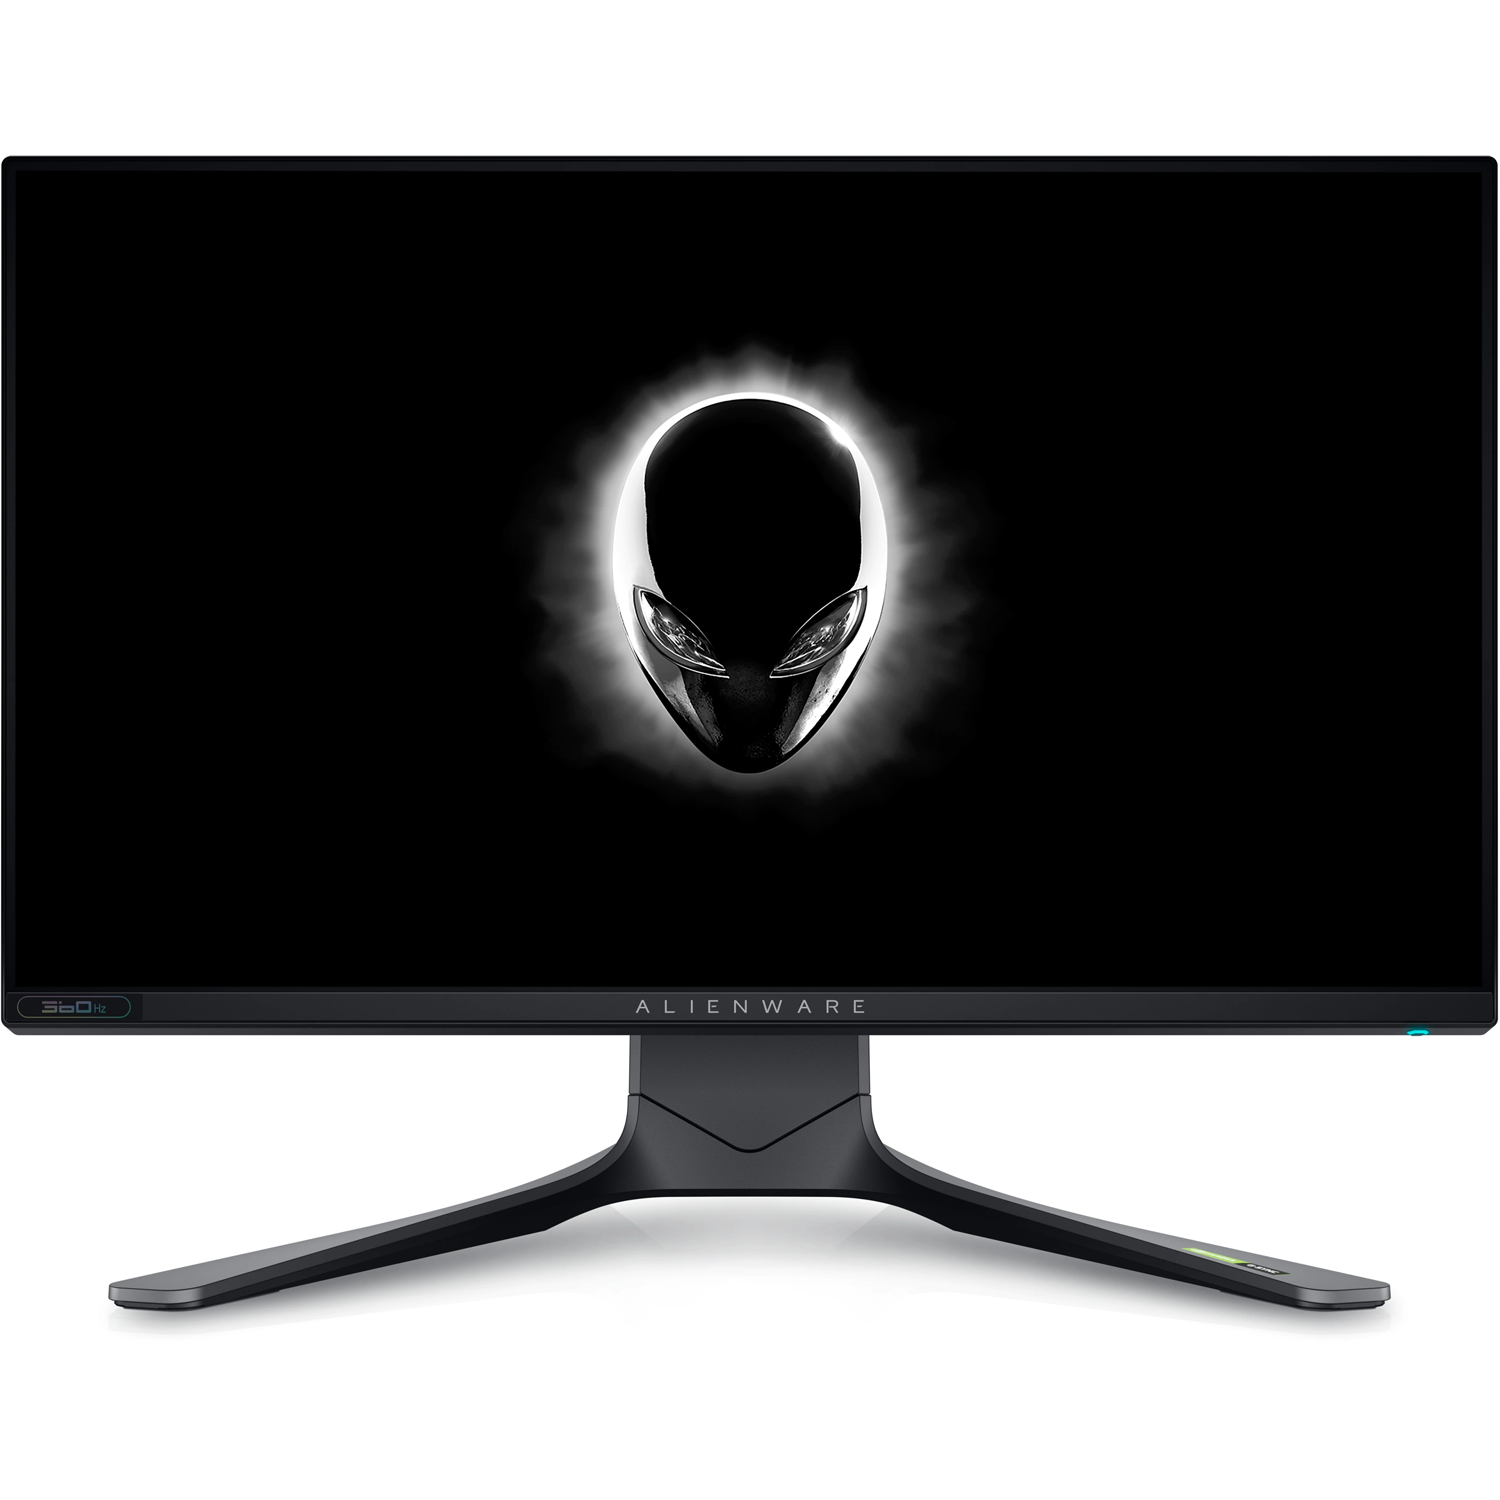 Dell Alienware 25-inch monitor